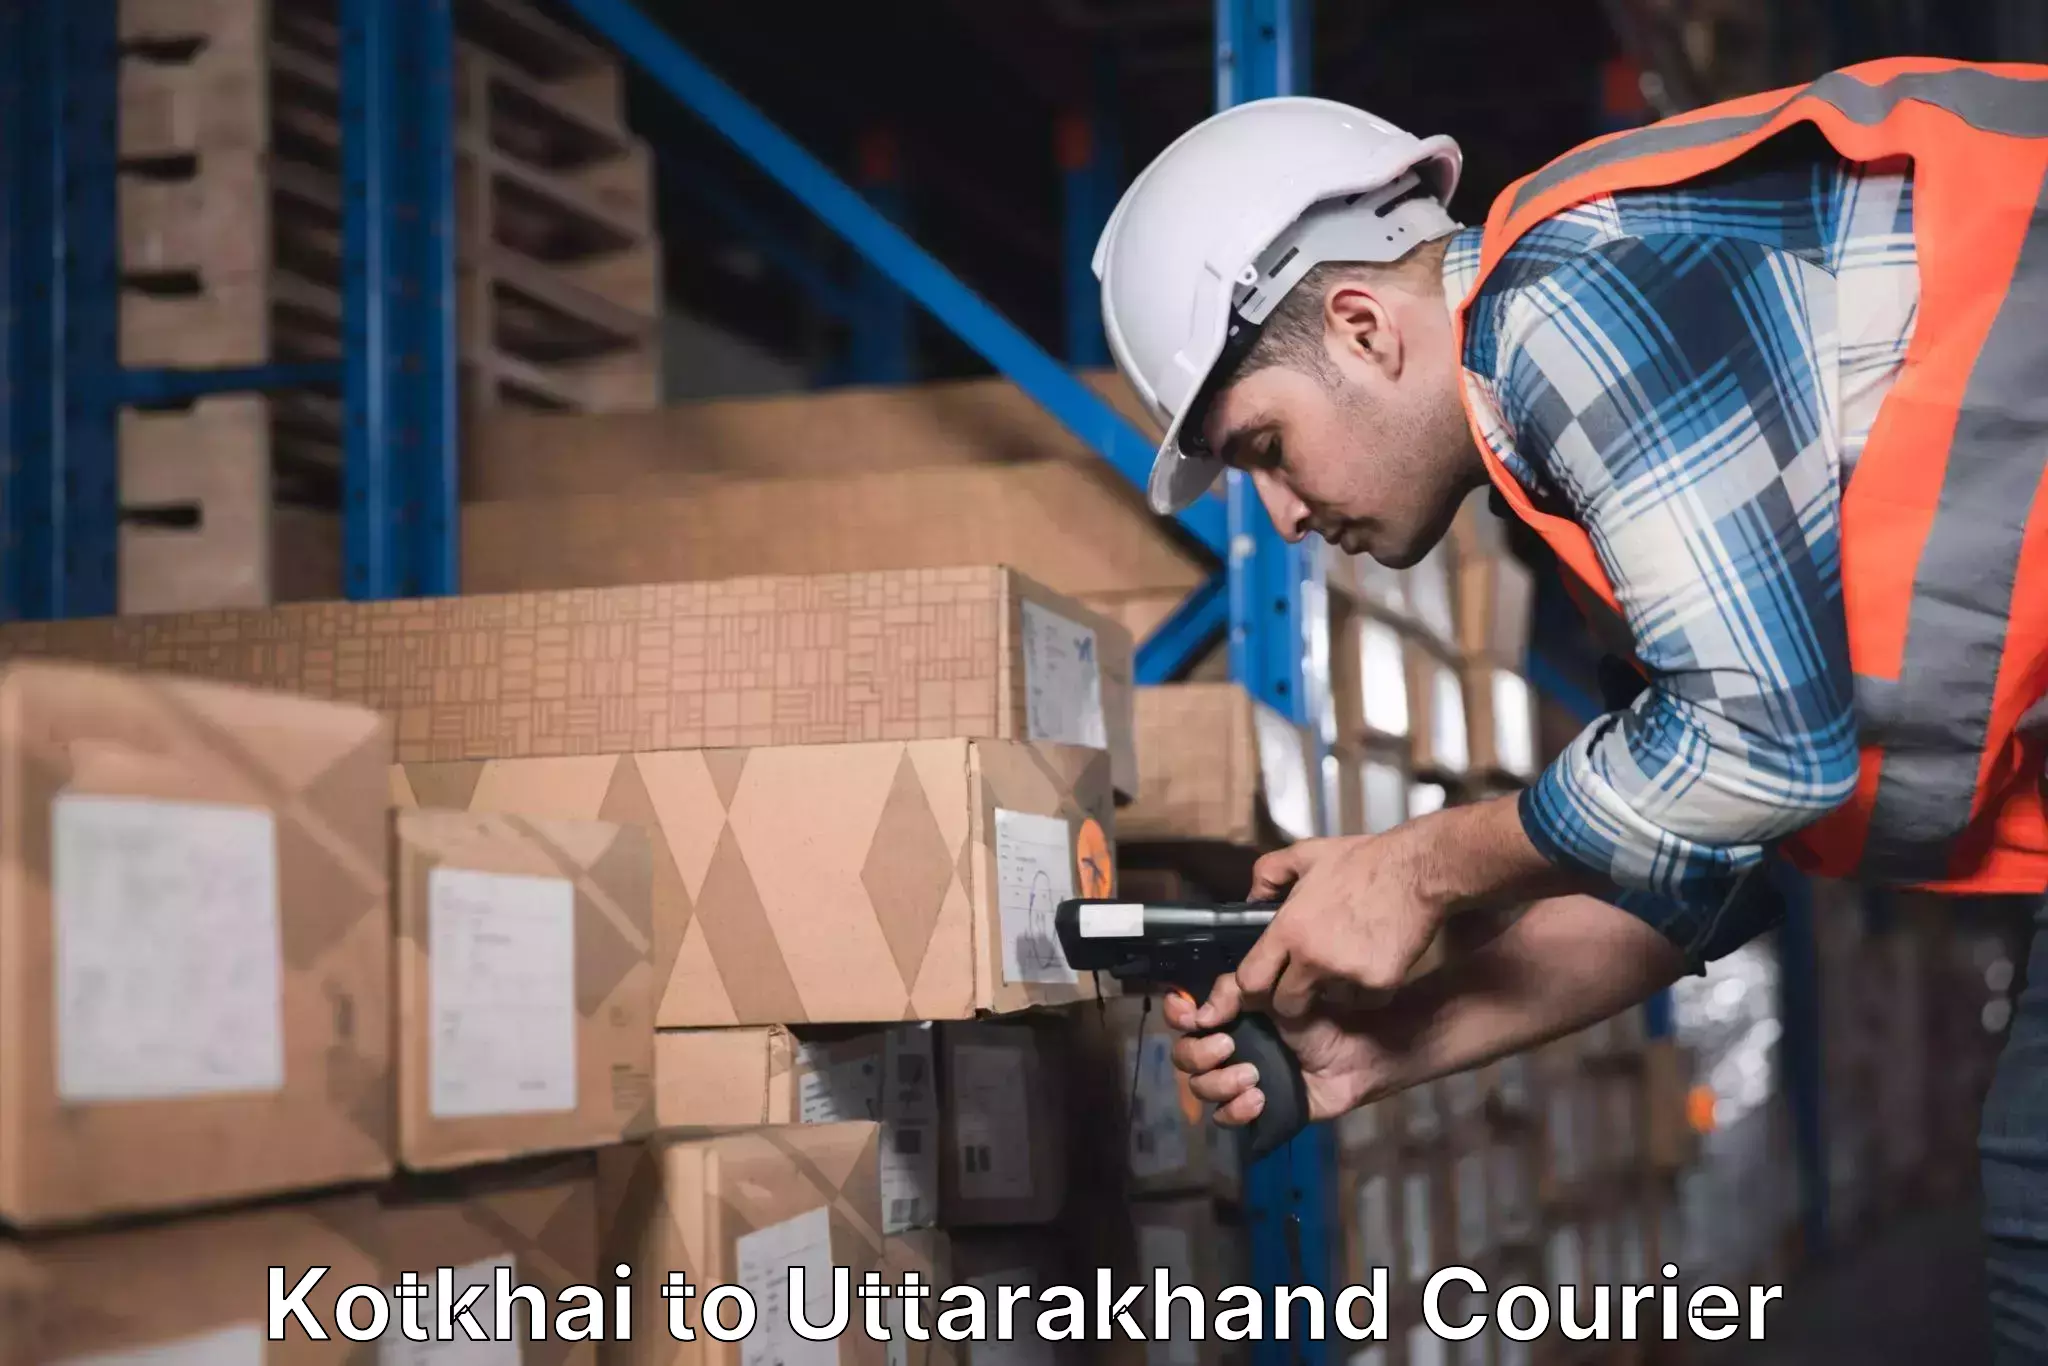 Versatile courier offerings Kotkhai to Uttarakhand